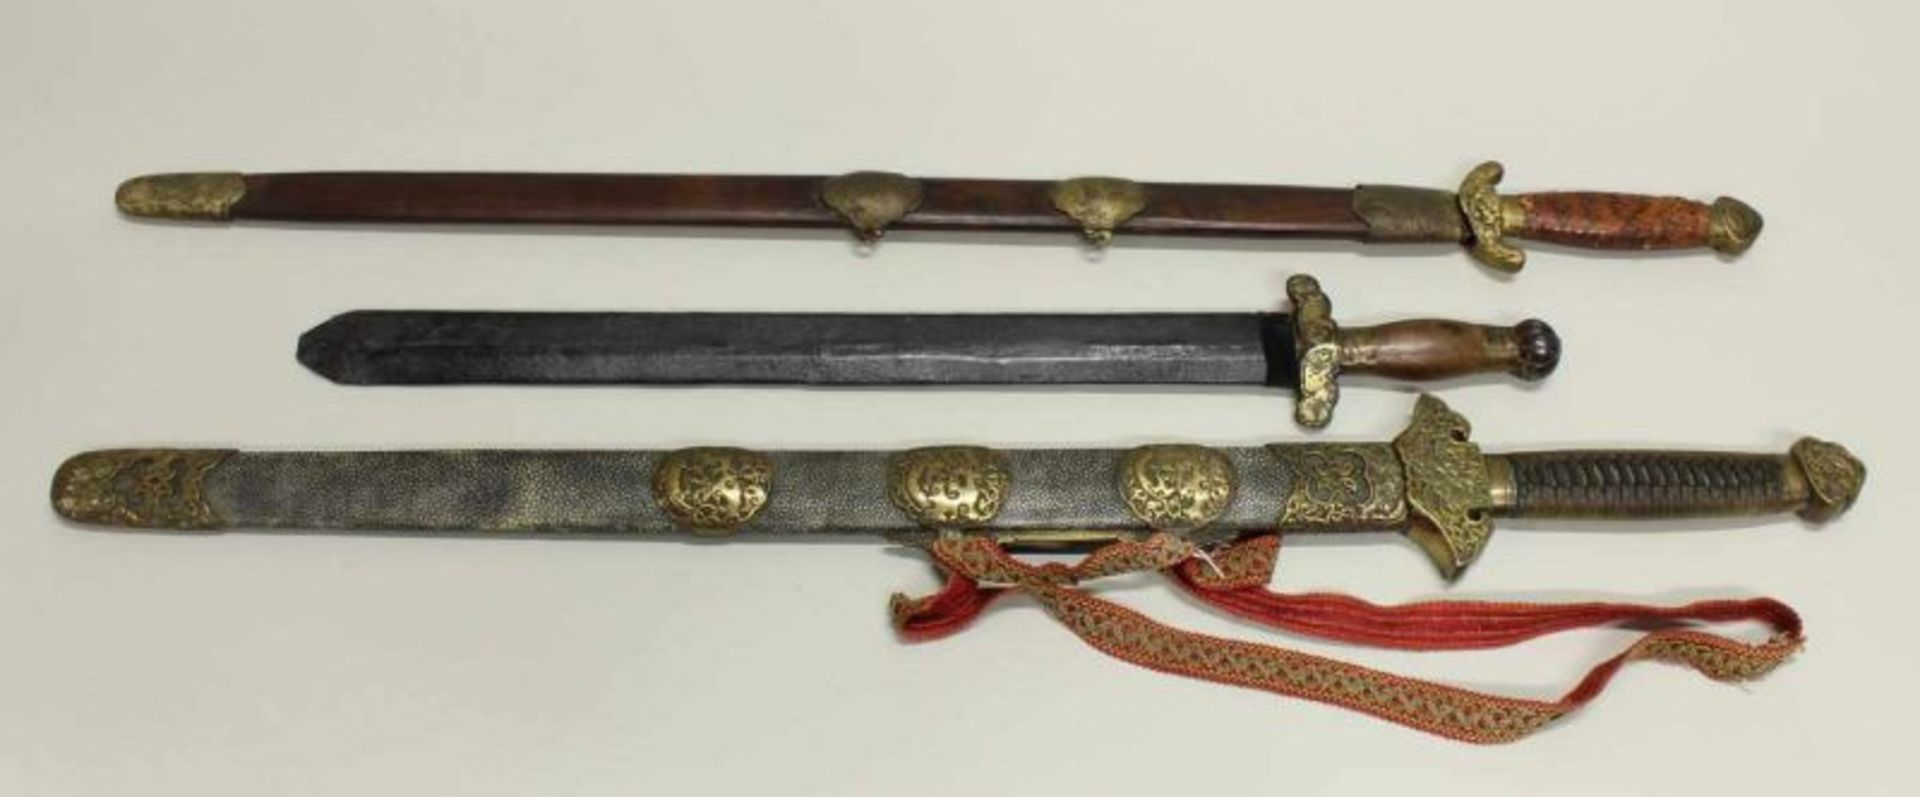 3 Schwerter, China, 19. Jh., diverse Ausführungen, je mit Scheide, Messingbeschläge, 1x Holzgriff,